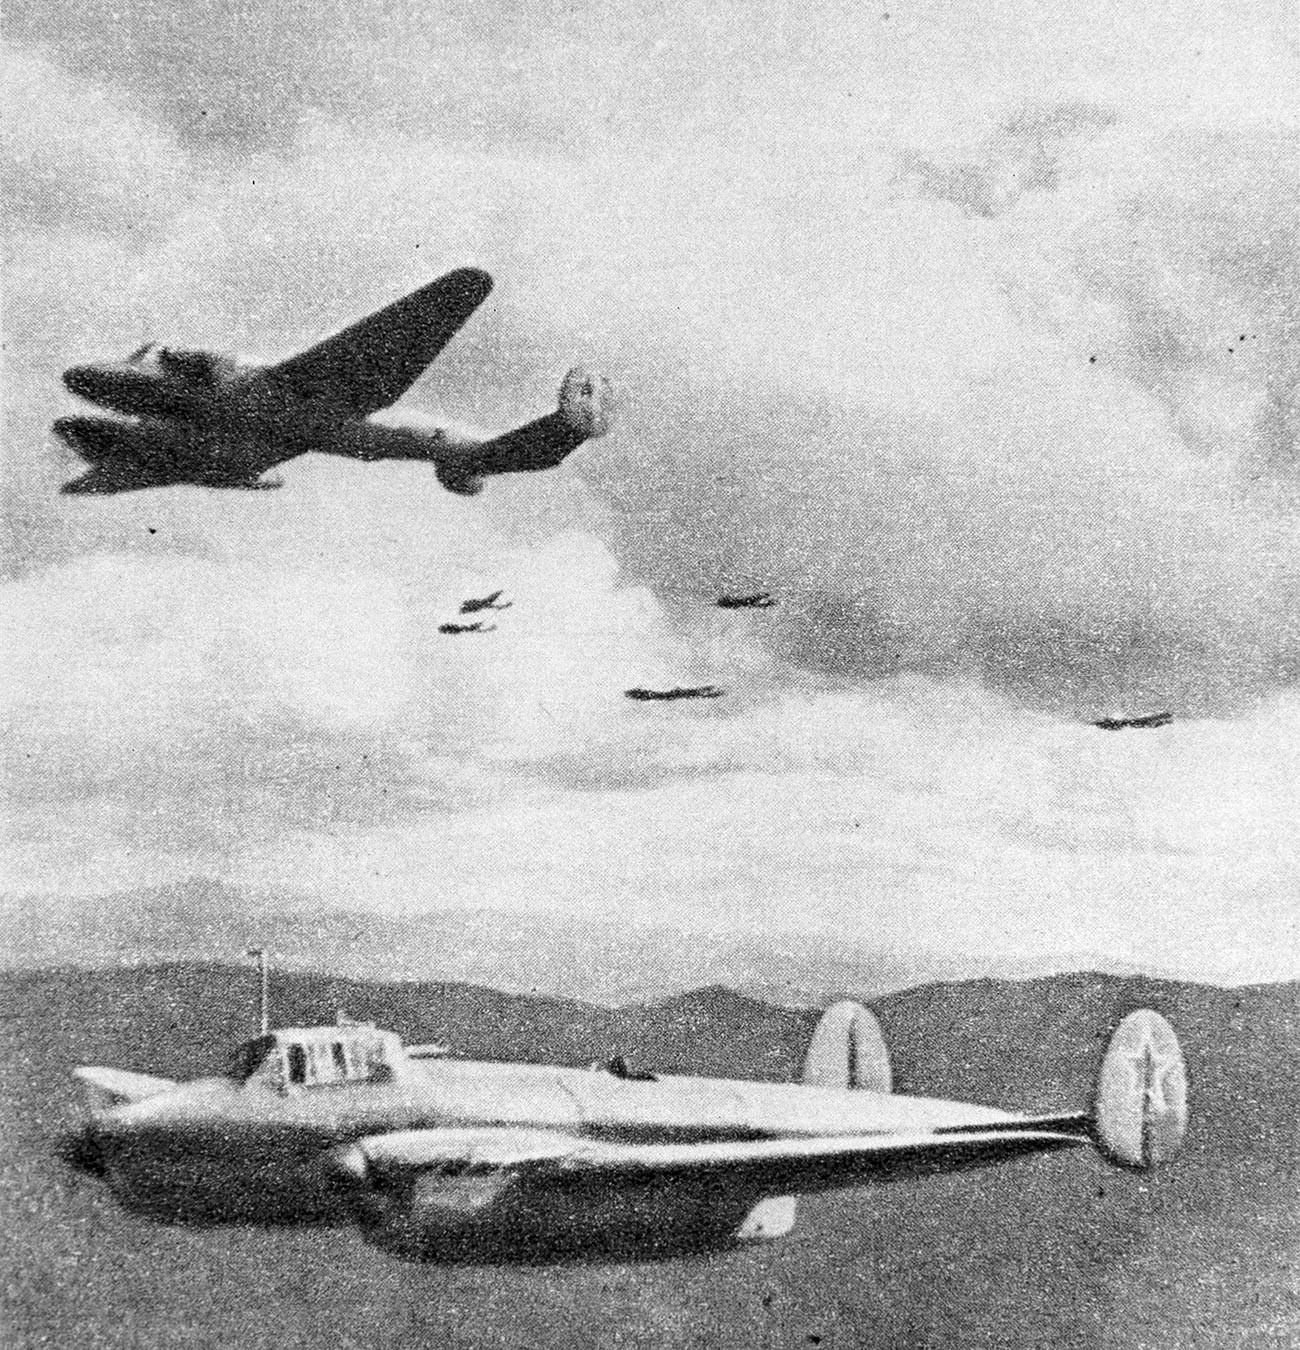 Sovjetski piloti dobrovoljci u nacionalno-oslobodilačkoj borbi kineskog naroda protiv japanskih osvajača (1937.-1945.).